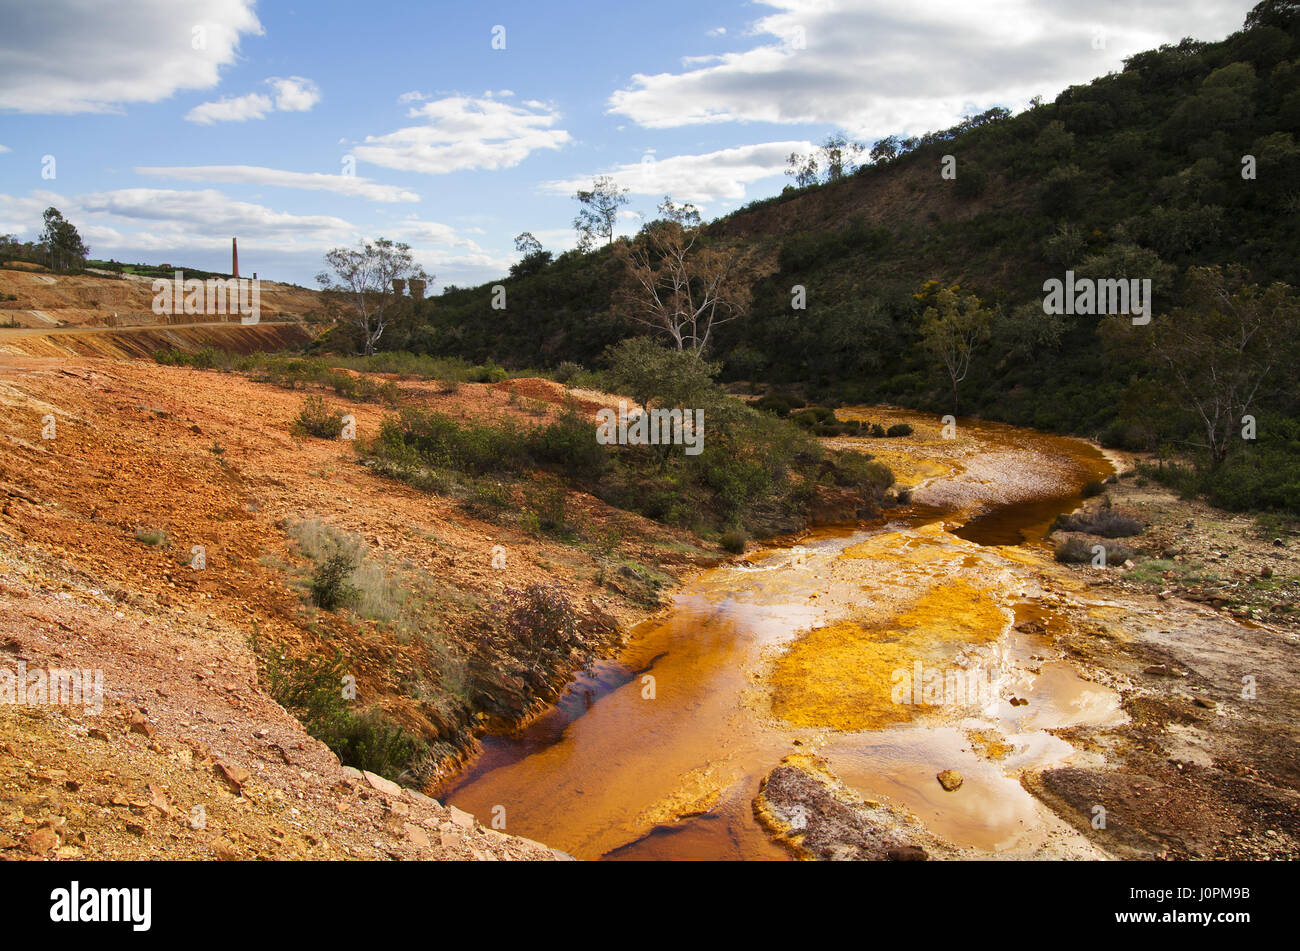 Rouge et jaune soufre et de fer rivière polluée bend à Sao Domingos mine abandonnée sous un ciel bleu nuageux. Mertola, Alentejo, Portugal. Banque D'Images